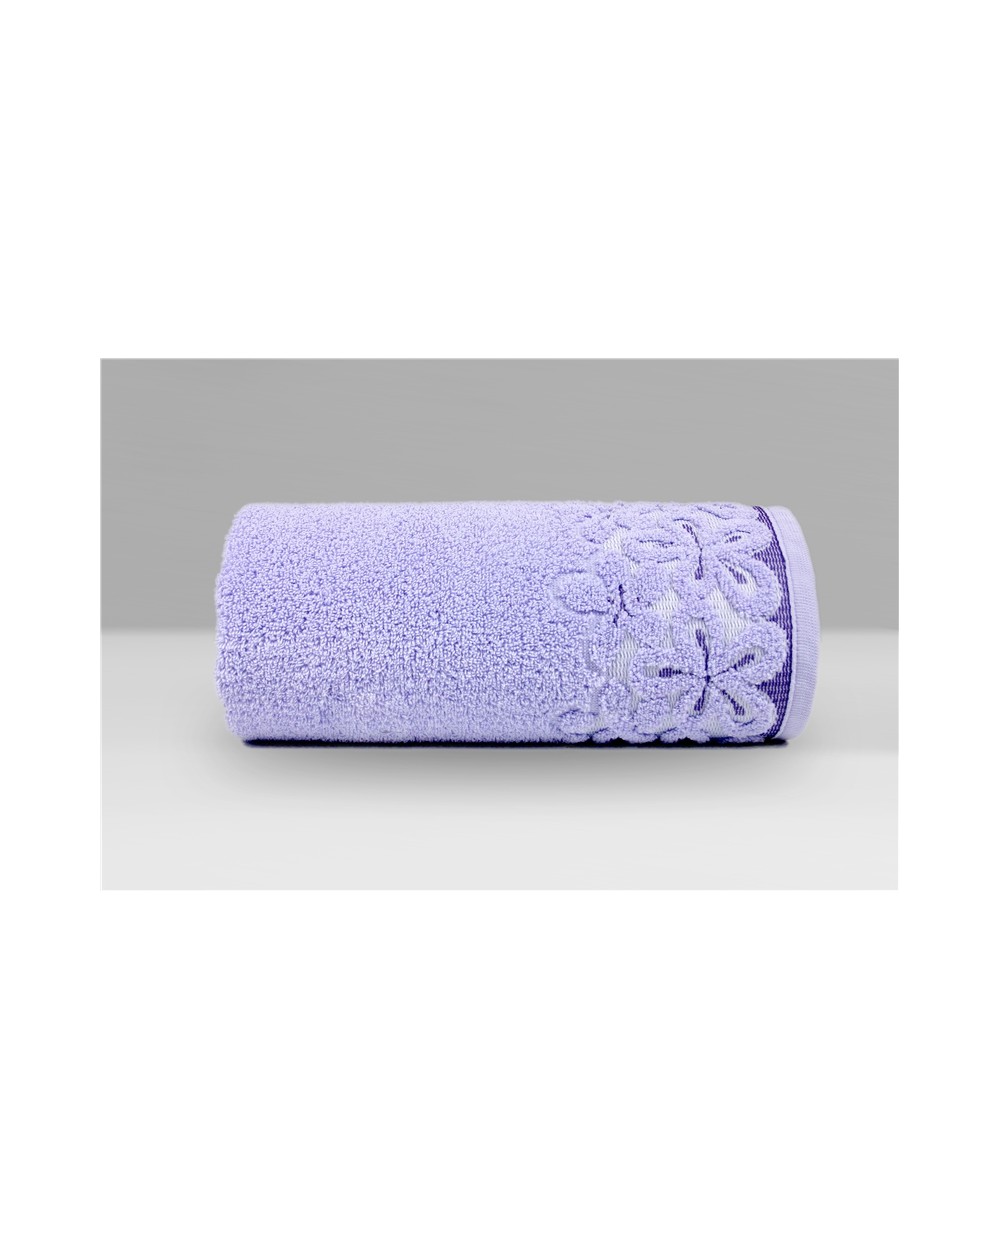 Ręcznik Bella mikrobawełna 50x90 lawendowy